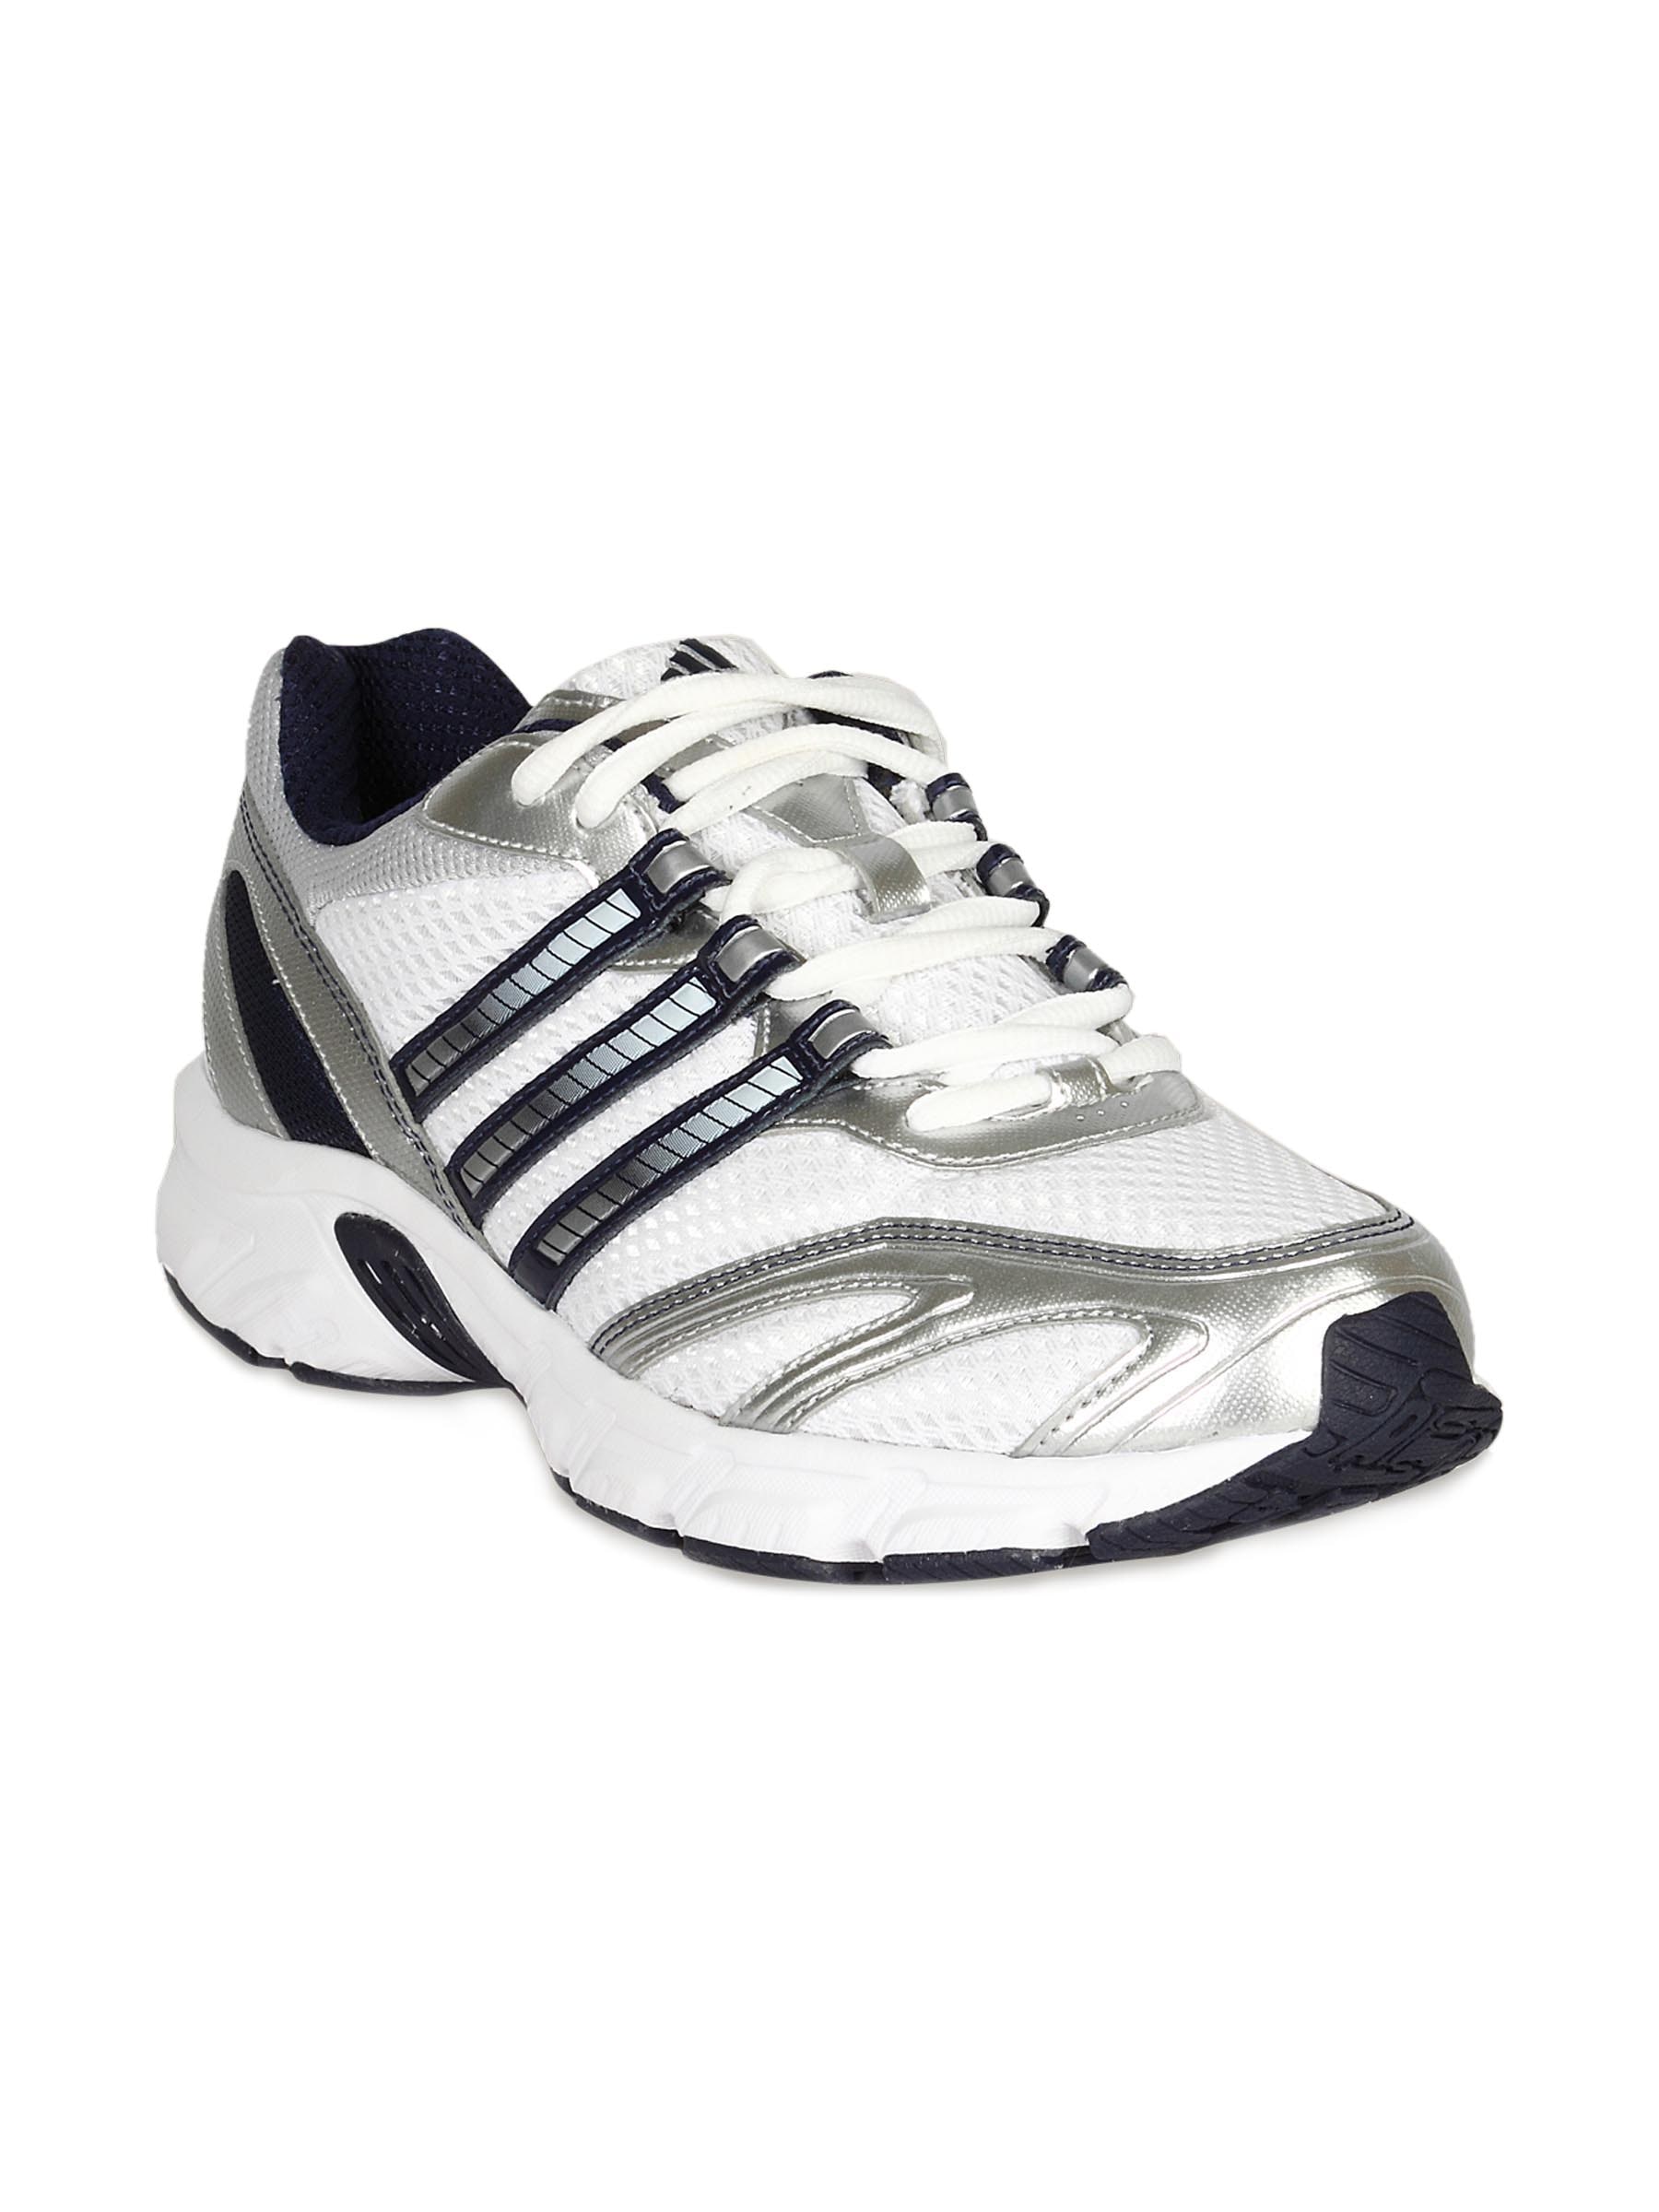 ADIDAS Men's Furano 2 White Indigo Silver Shoe